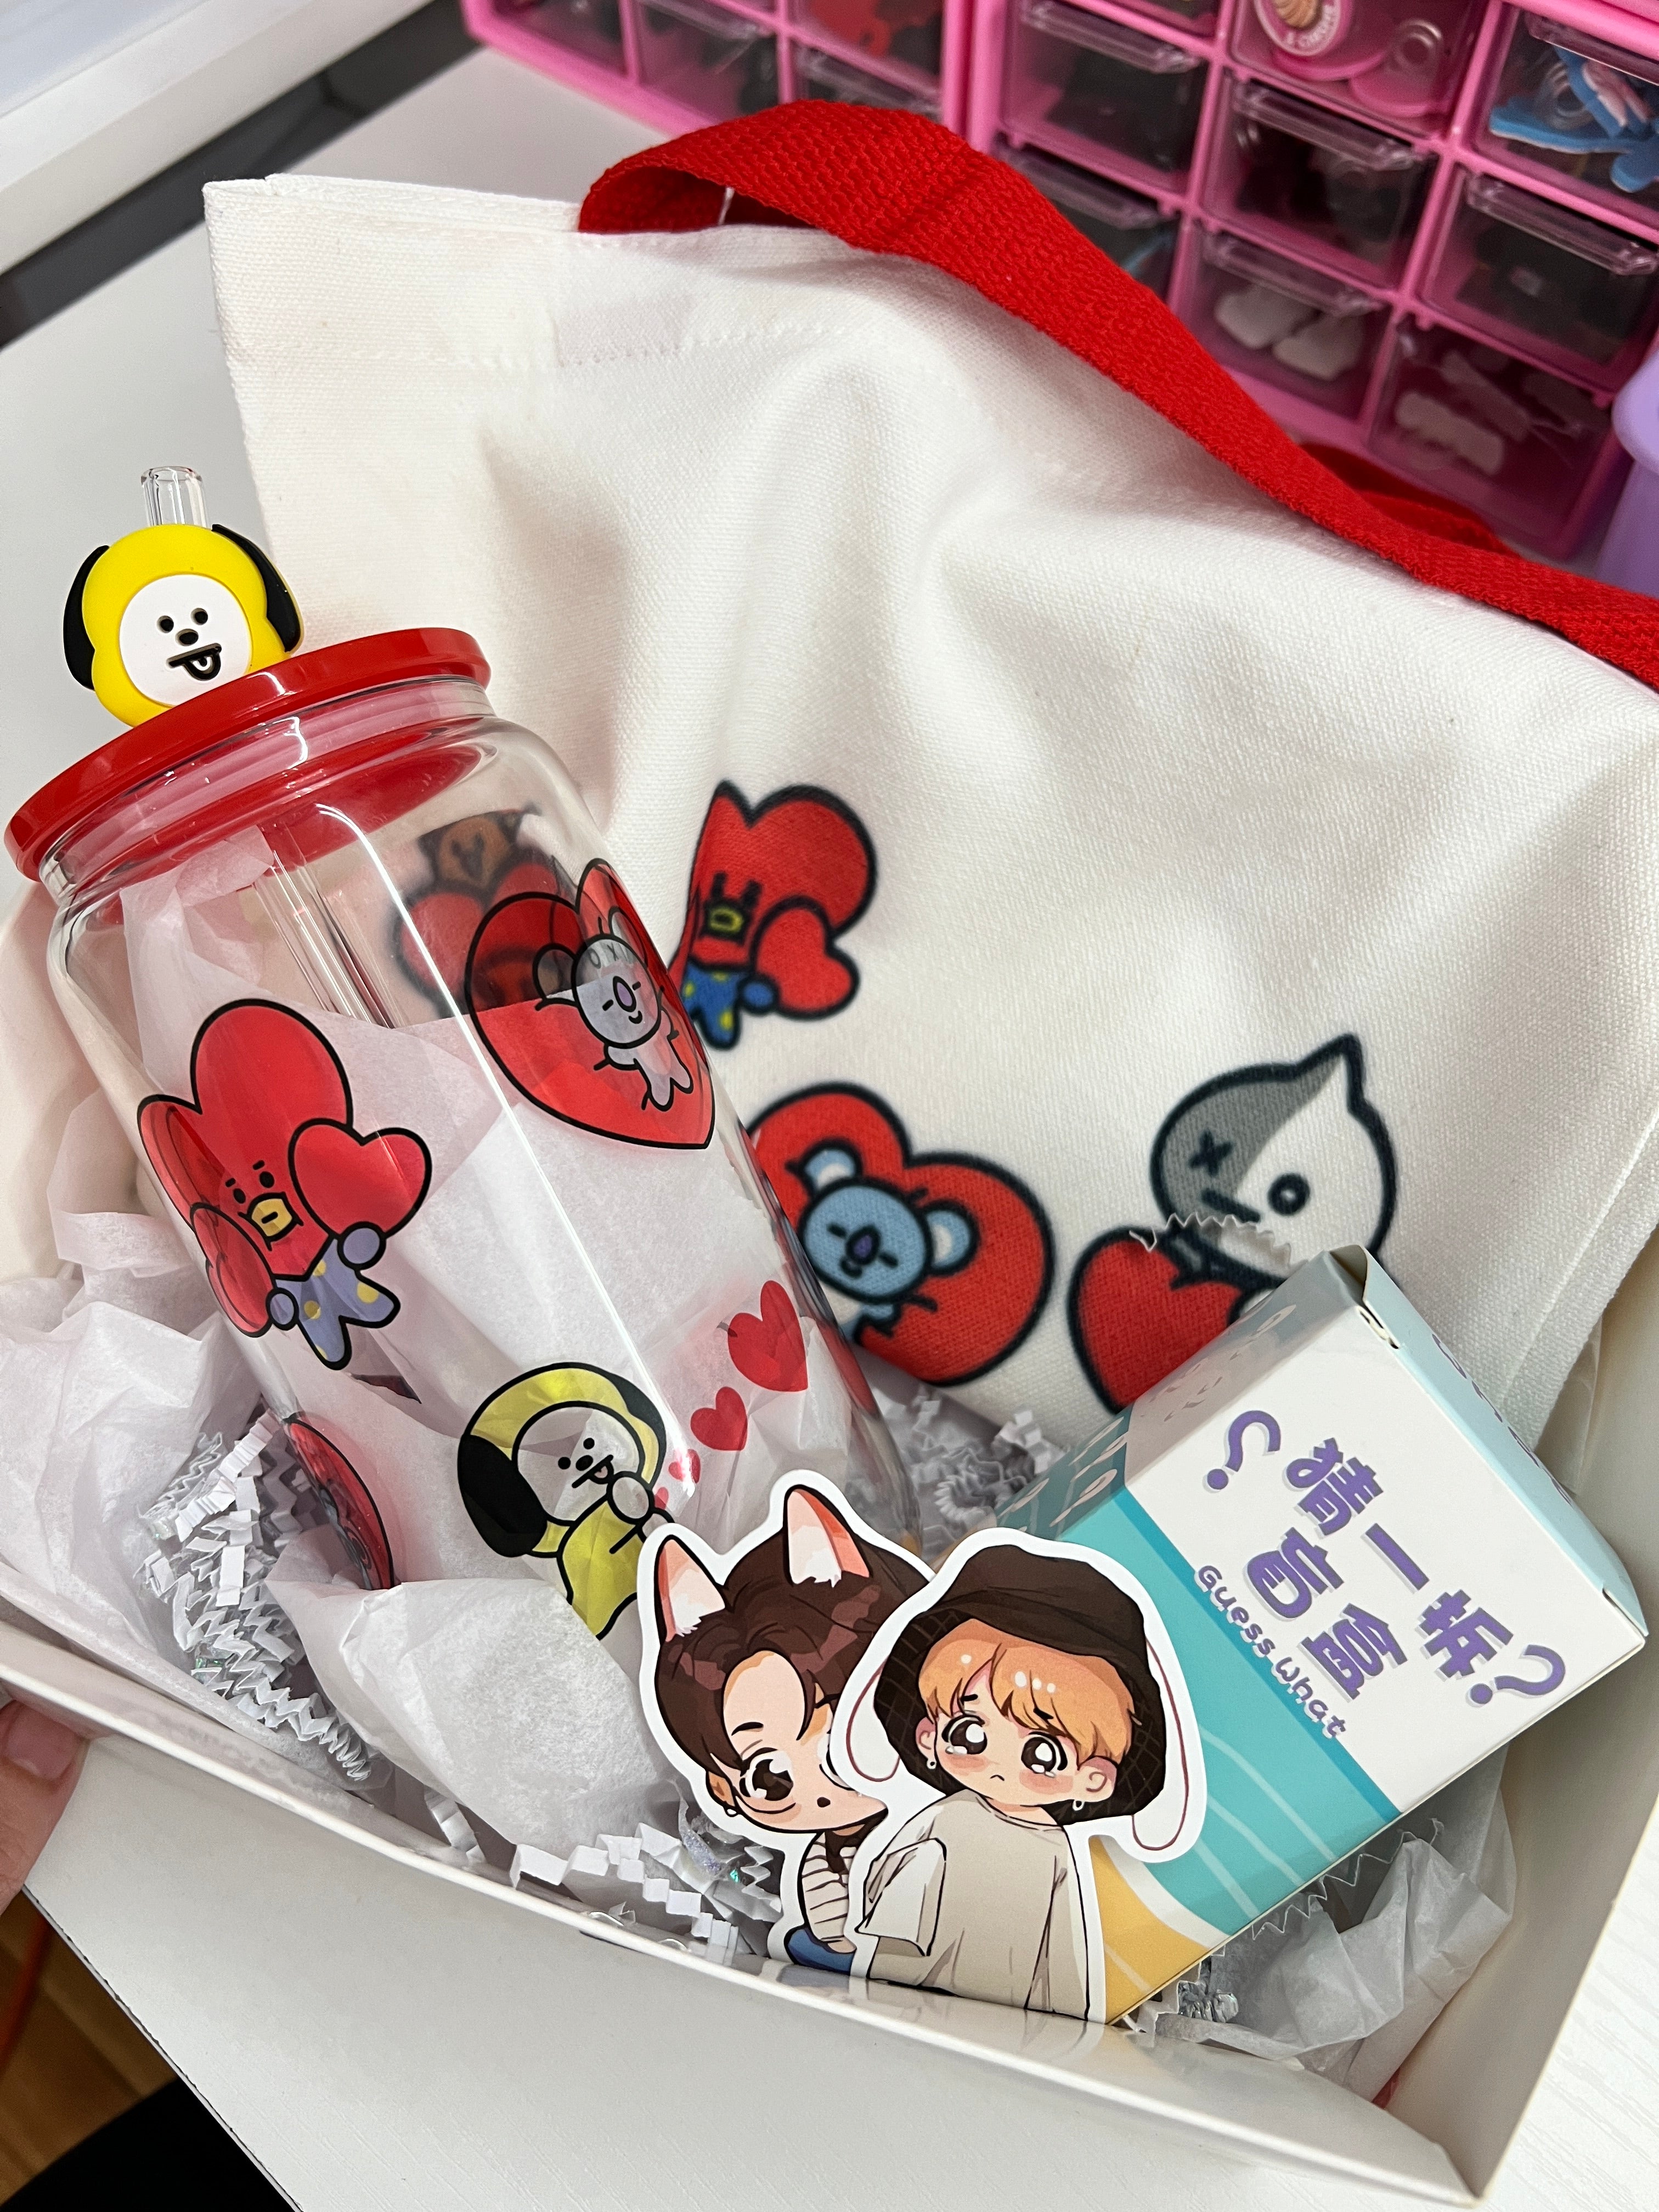 Bts Valentine’s Day gift box